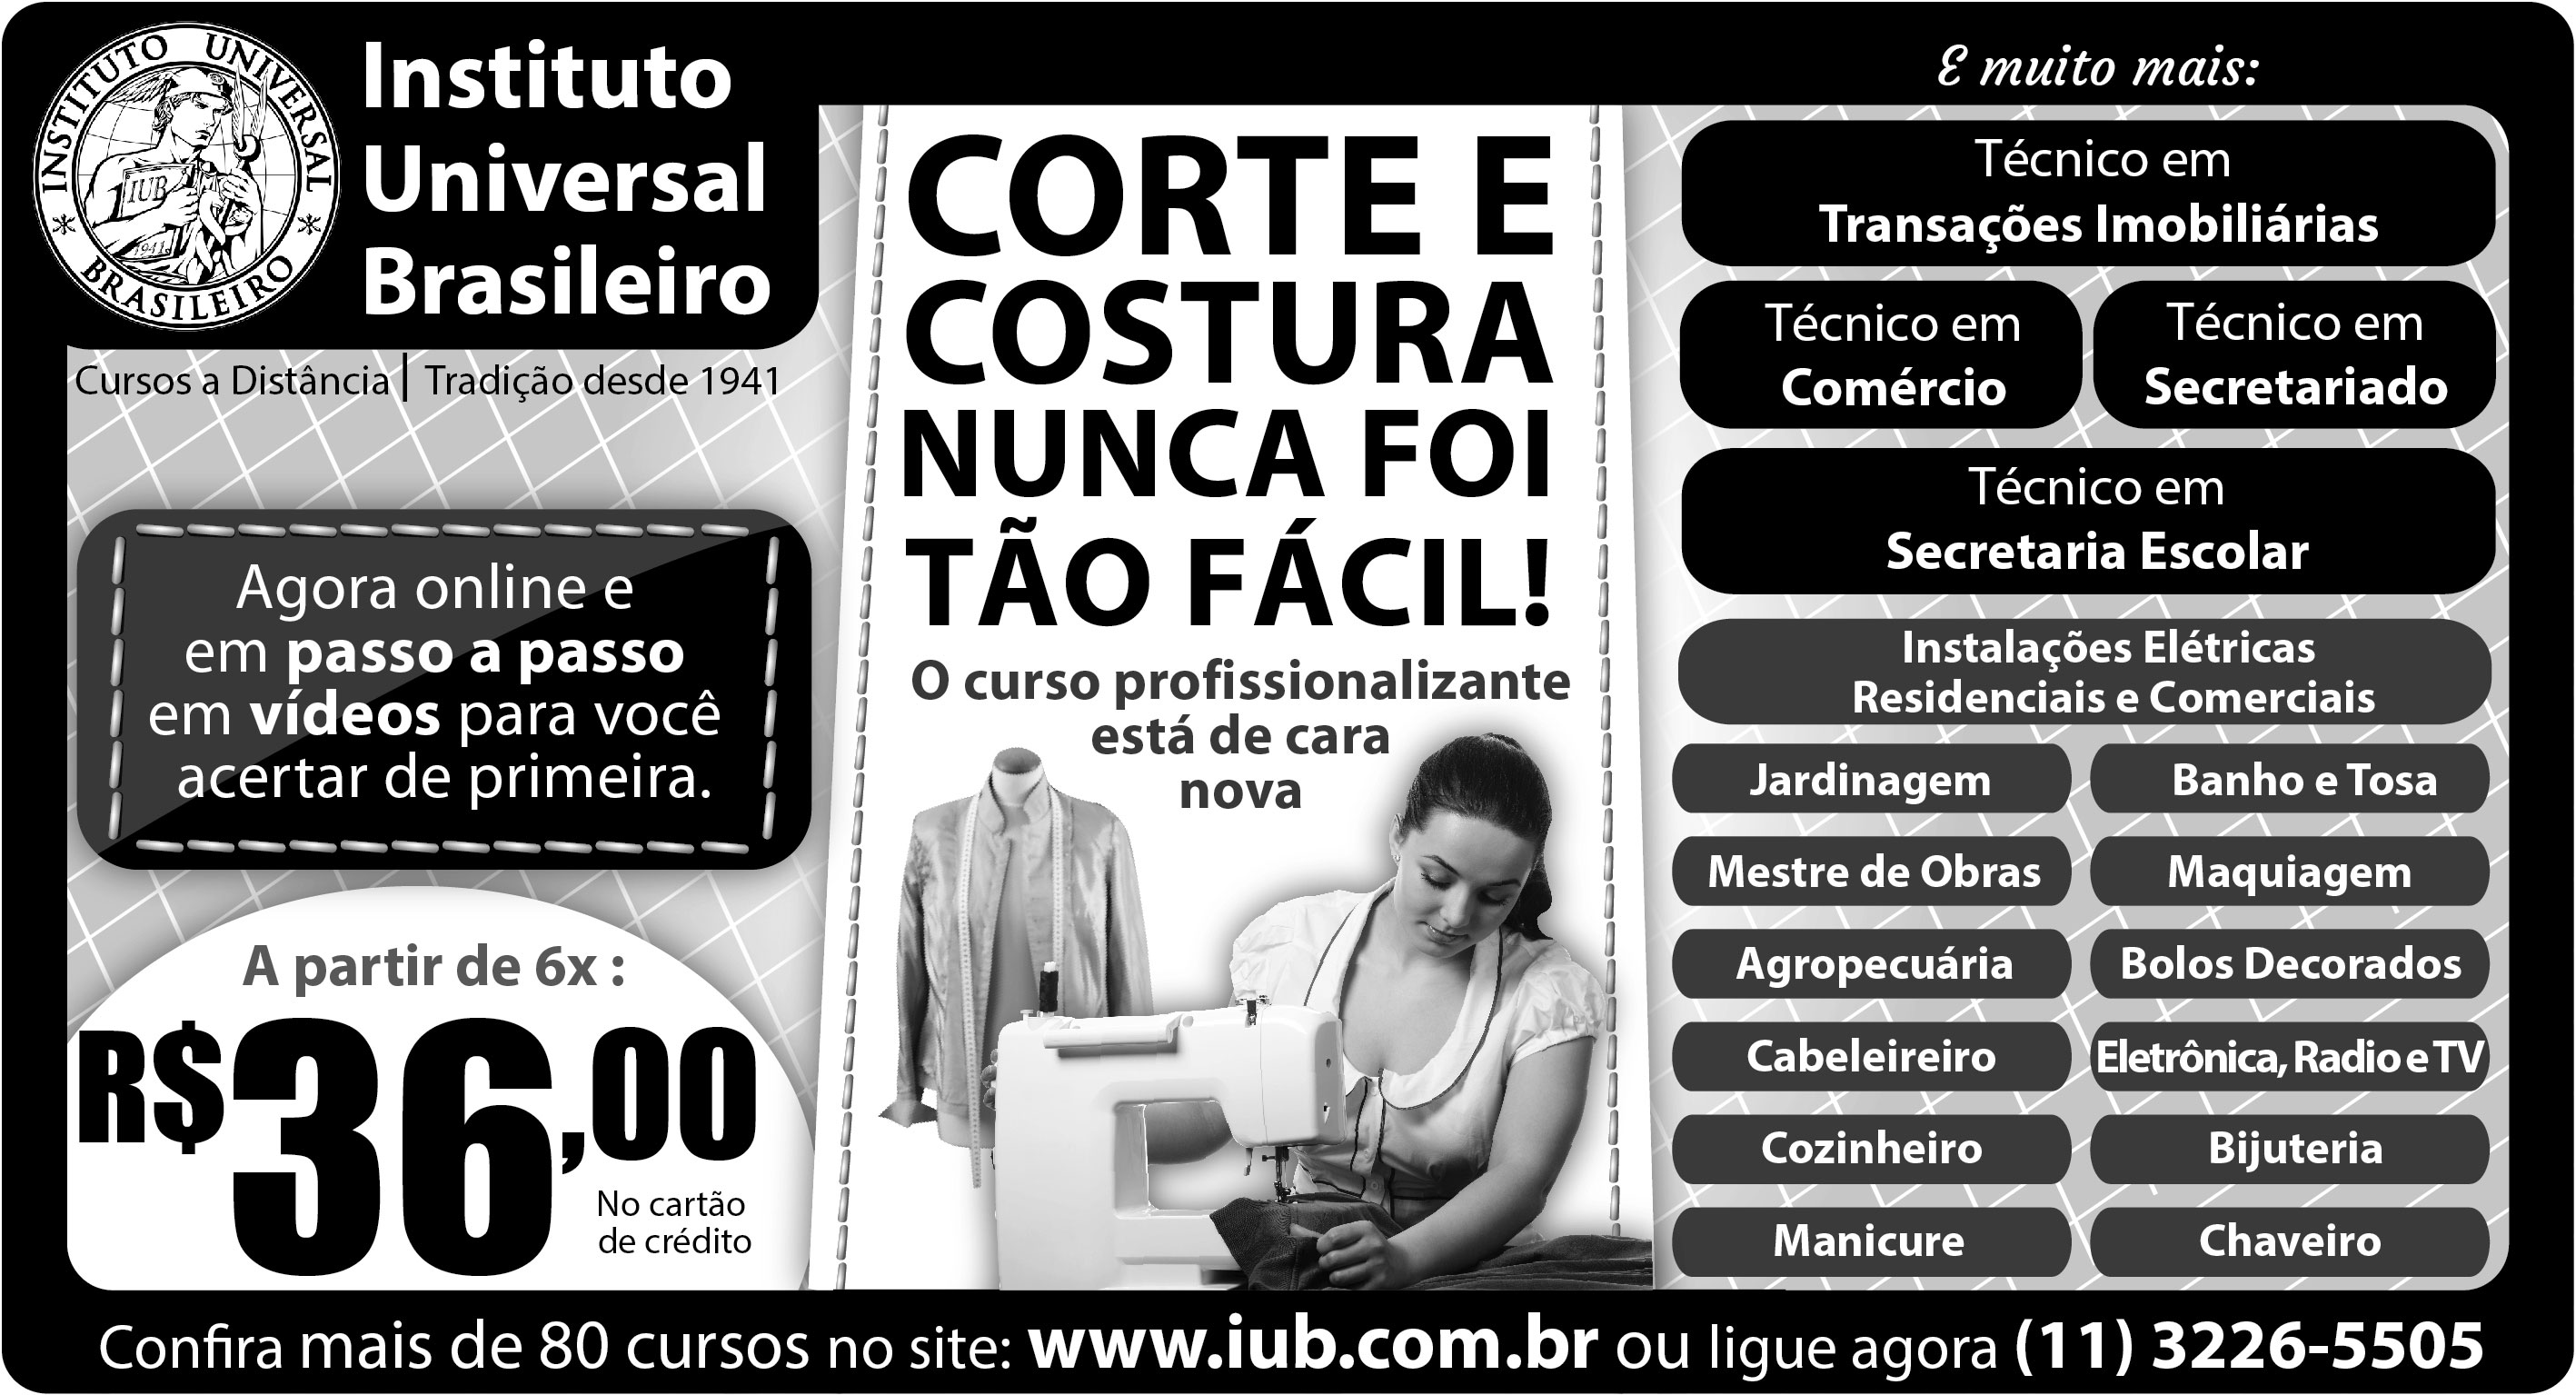 Curso a Distância de Cabeleireiro - Instituto Universal Brasileiro